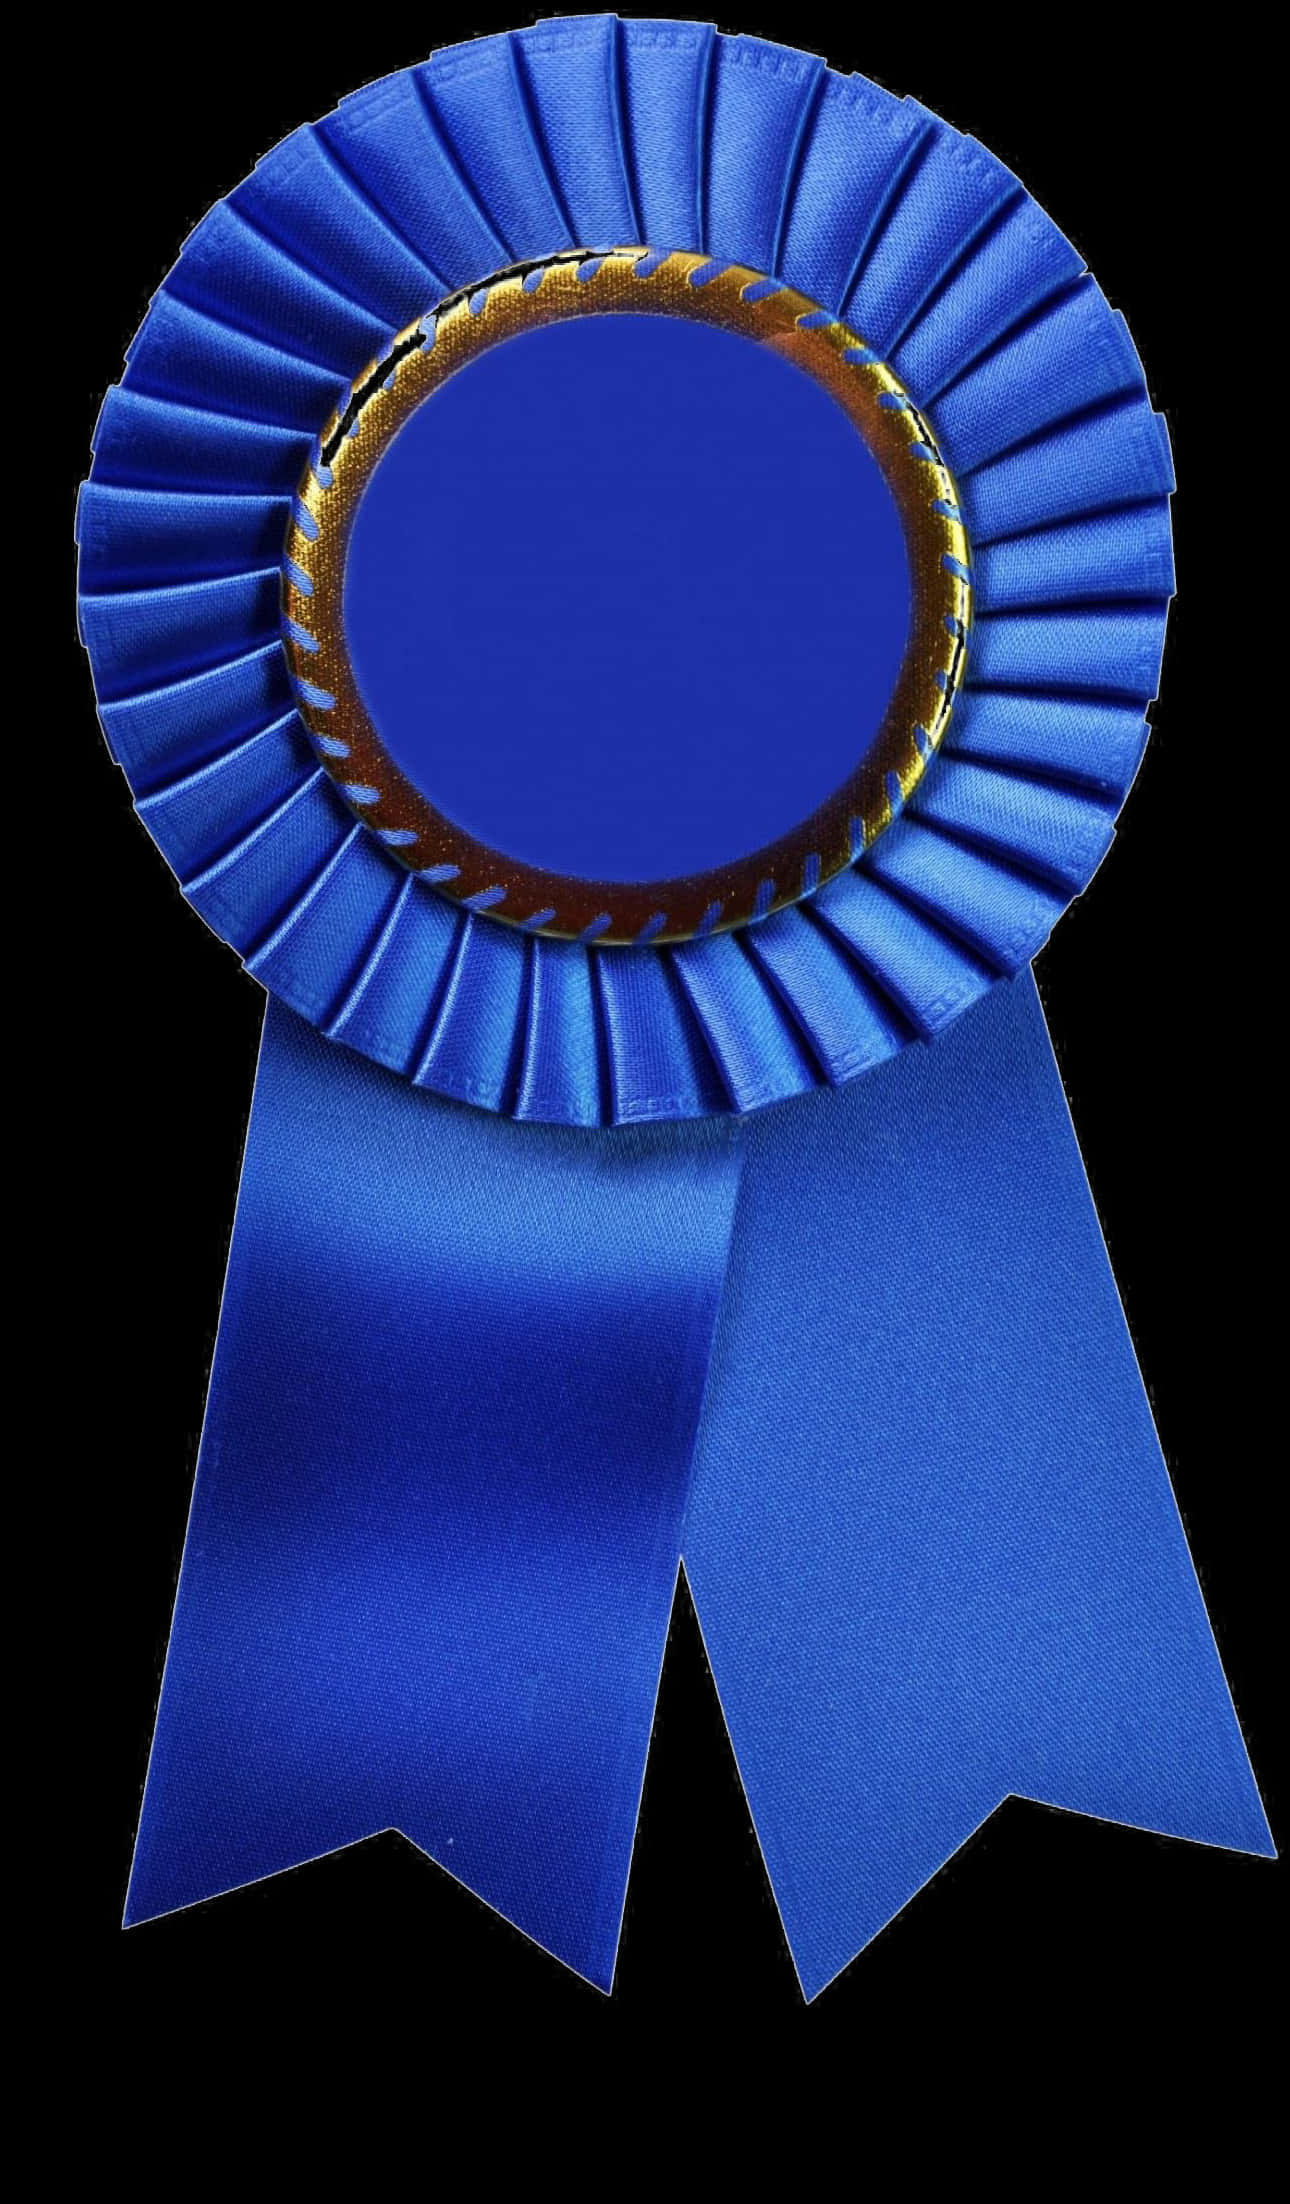 Blue Award Ribbon Isolated